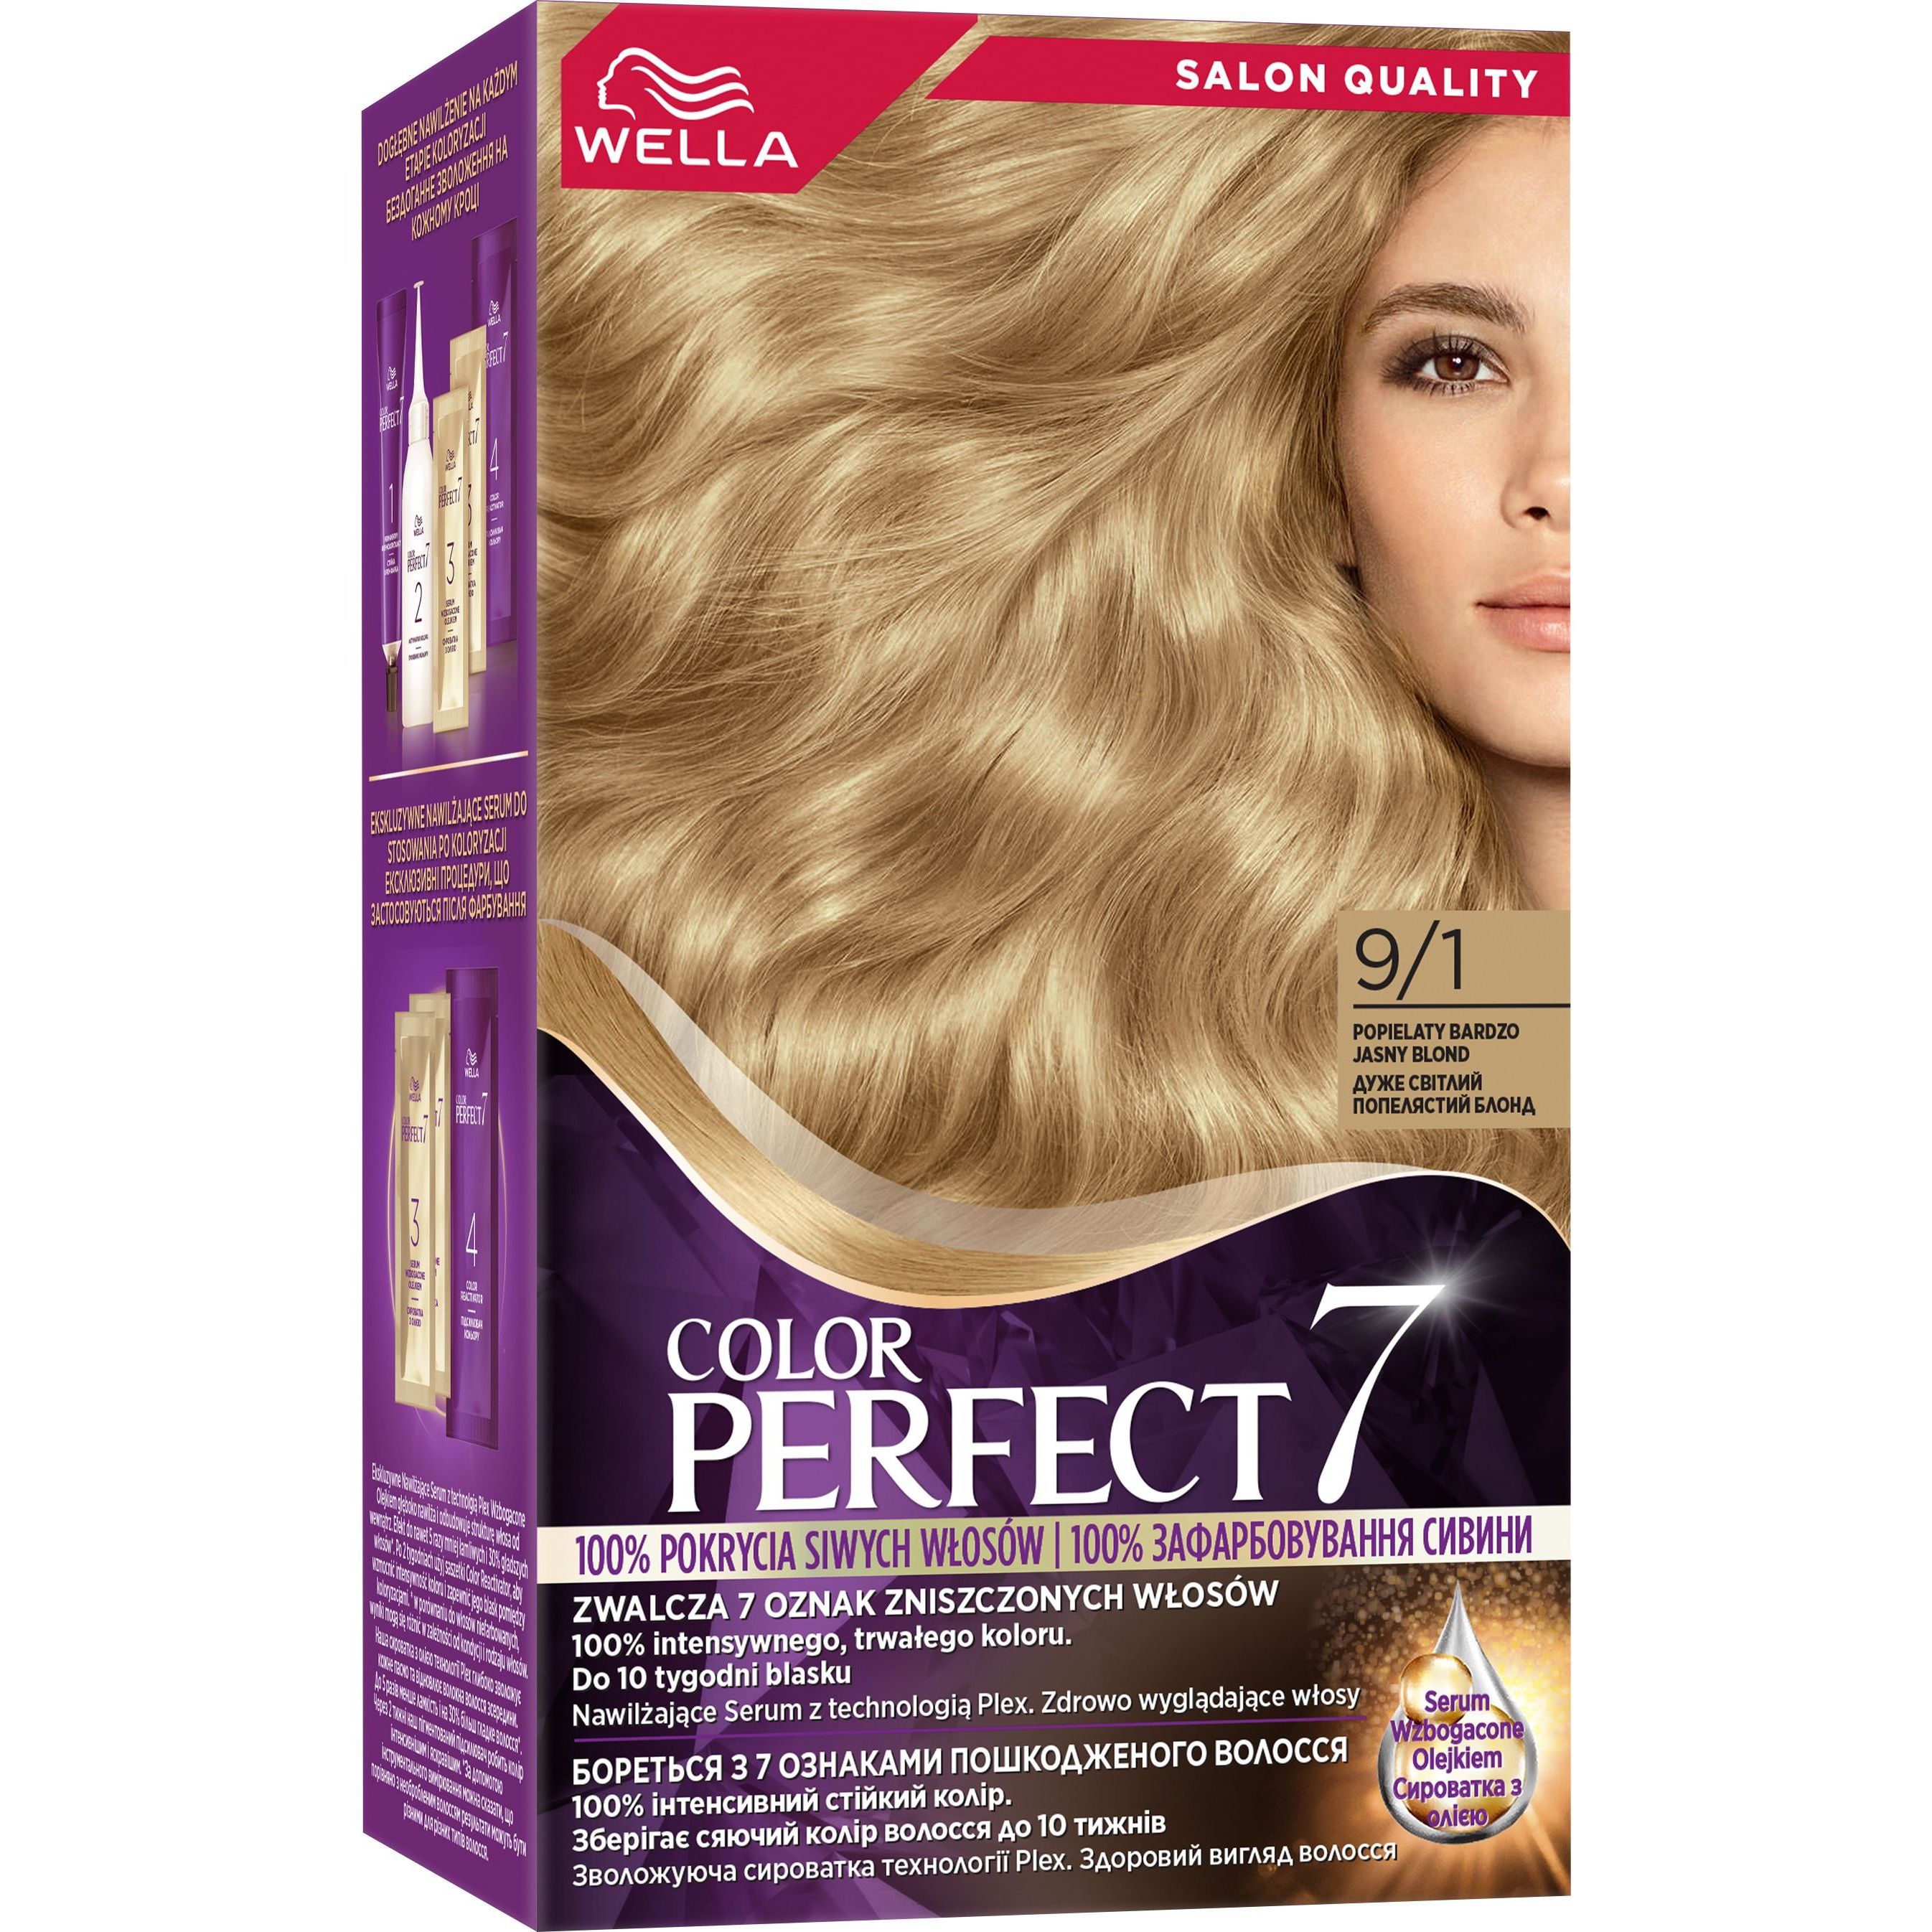 Стійка крем-фарба для волосся Wella Color Perfect 9/1 Дуже світлий попелястий блонд (4064666598413) - фото 1